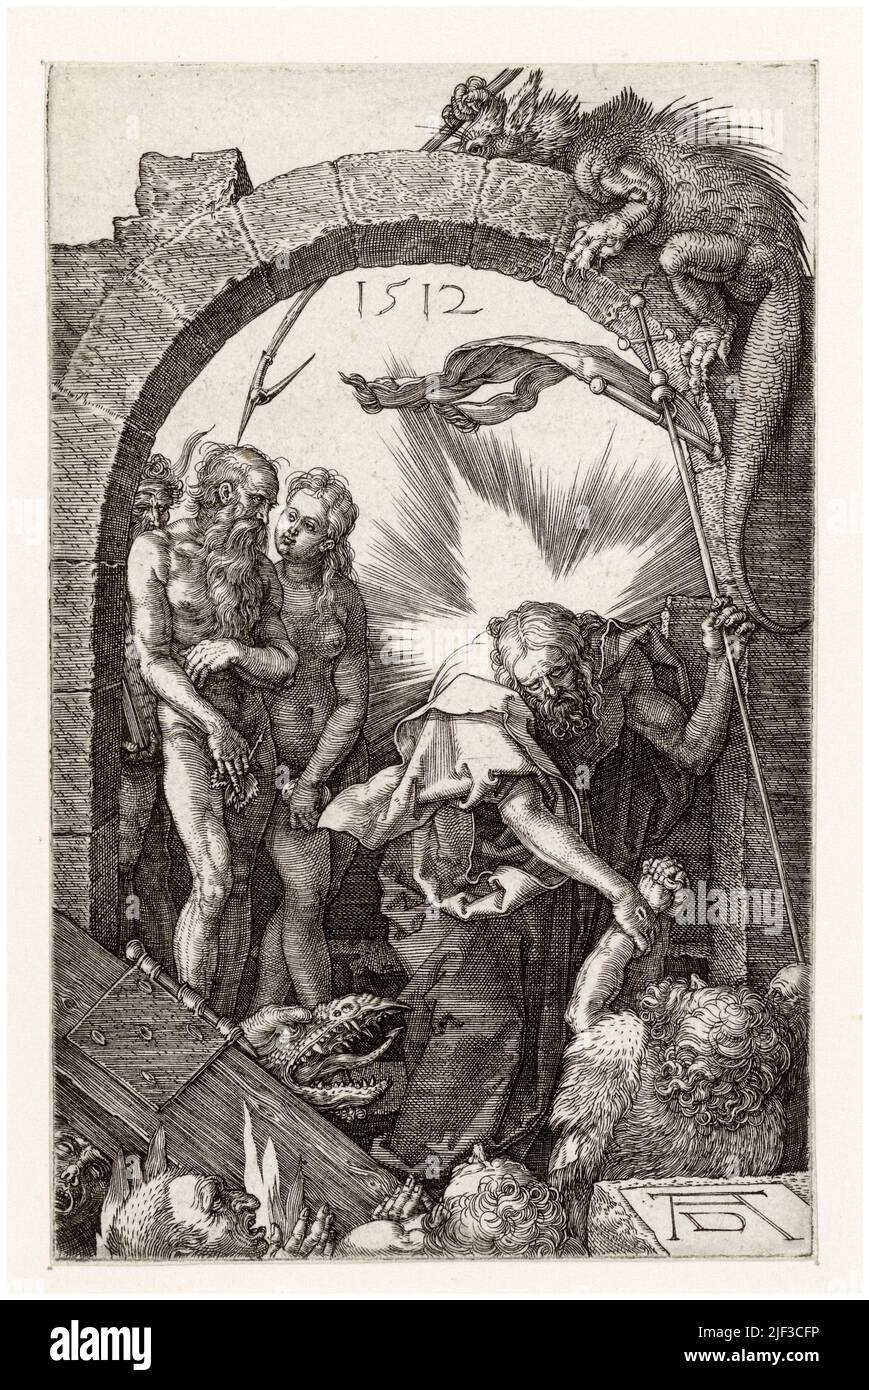 El descenso de Cristo en Limbo, grabado de principios del siglo 16th por Albrecht Durer, 1512 Foto de stock